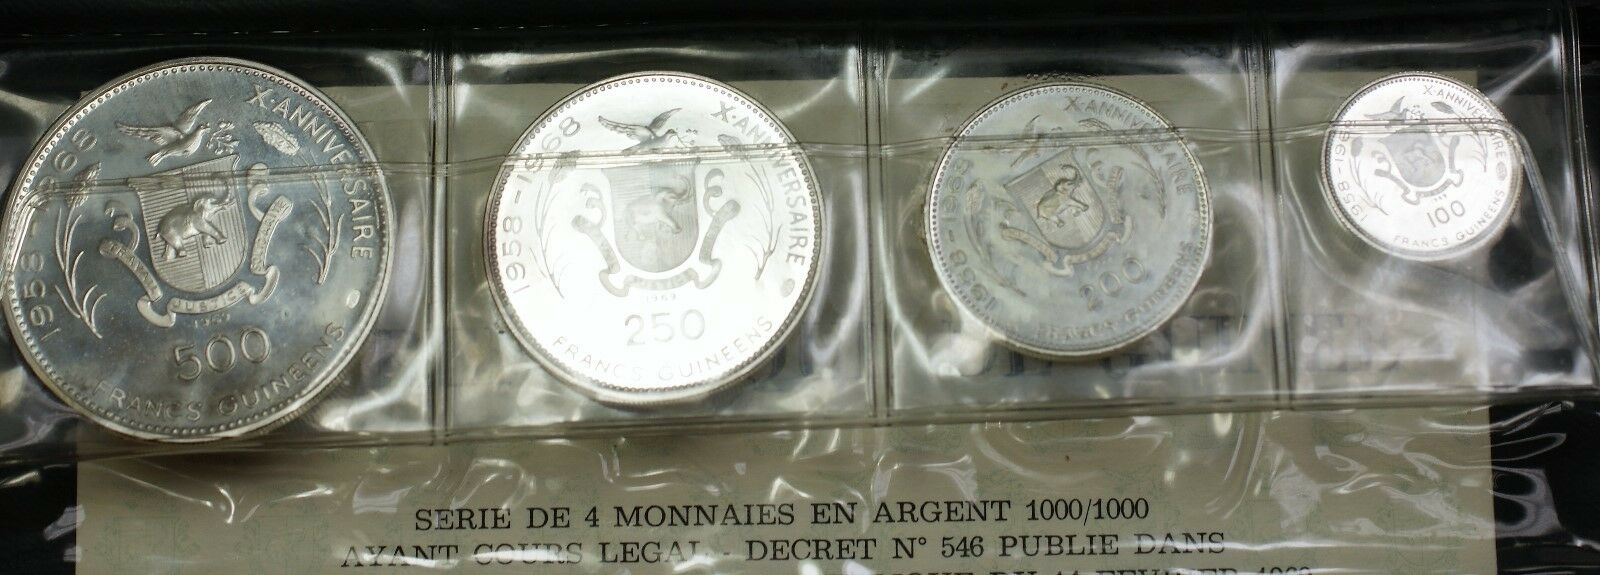 1969 Guniea 7 Coin Silver Proof Set 500 250 200 100 Francs Guineeas Cheetah Case